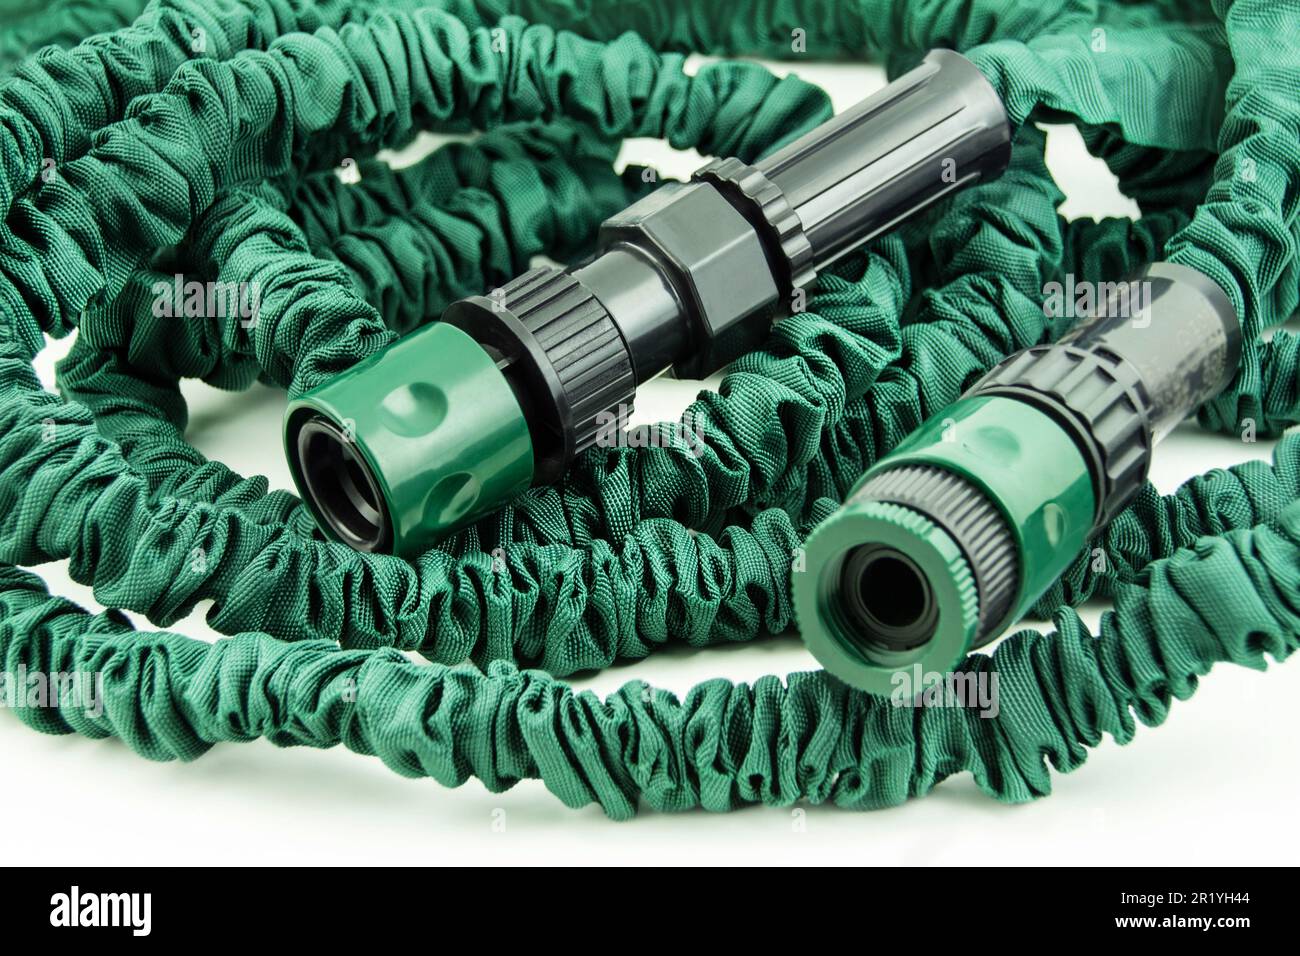 Green flexible garden hose close up Stock Photo